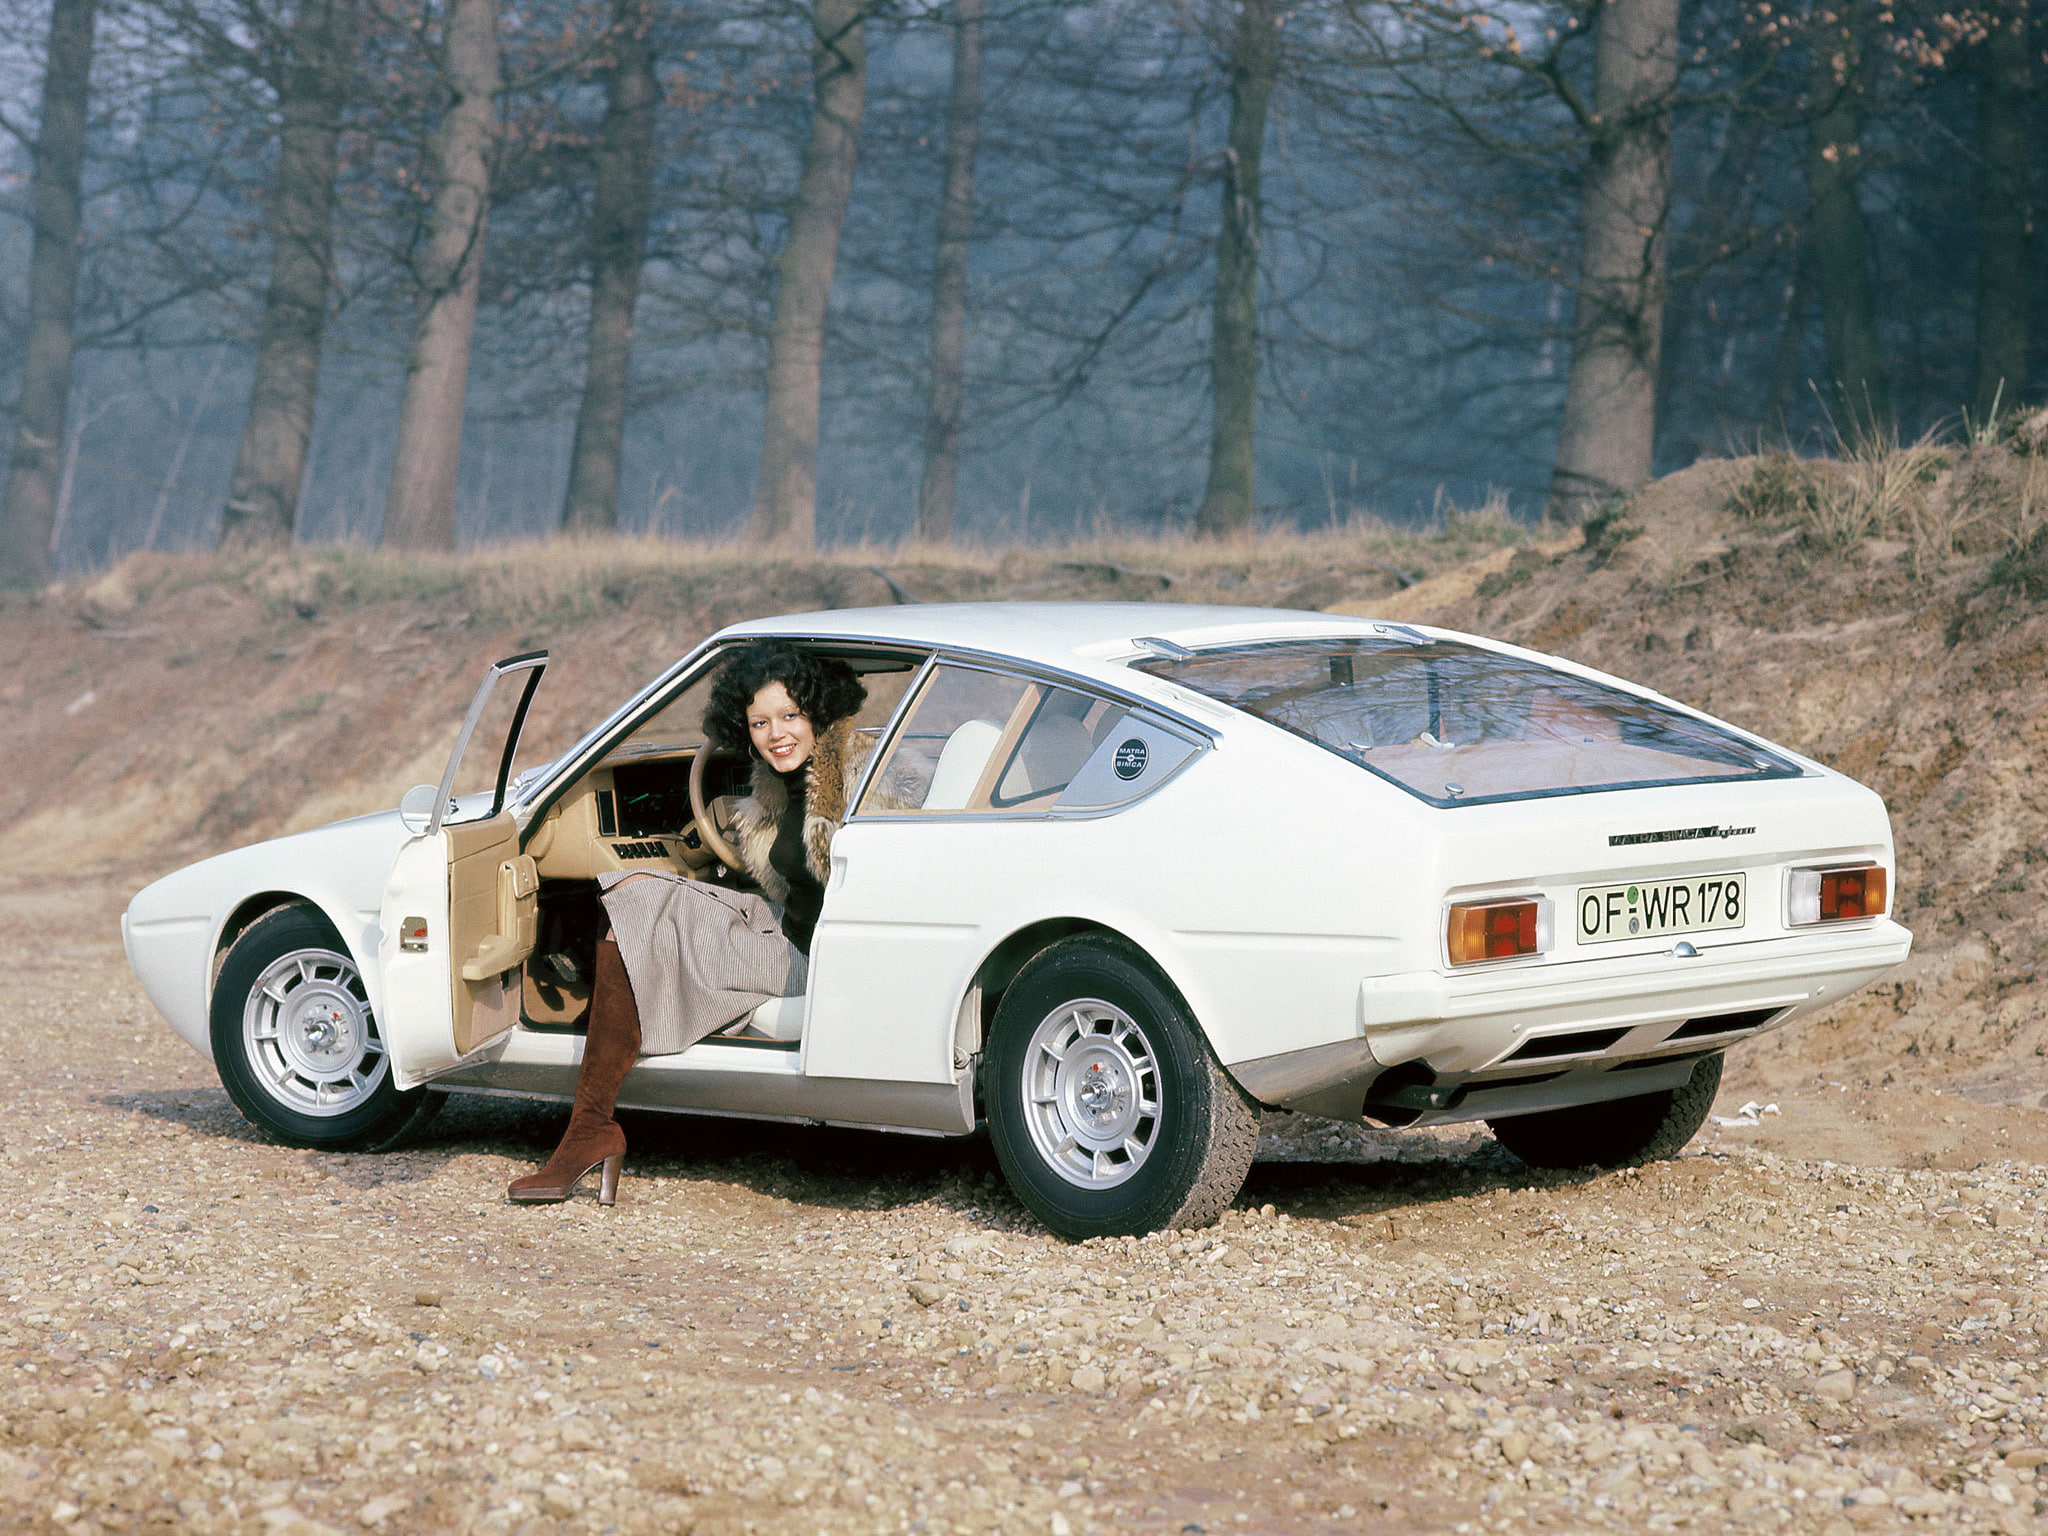 1974, bagheera, classic, courreges, matra simca, supercar, supercars